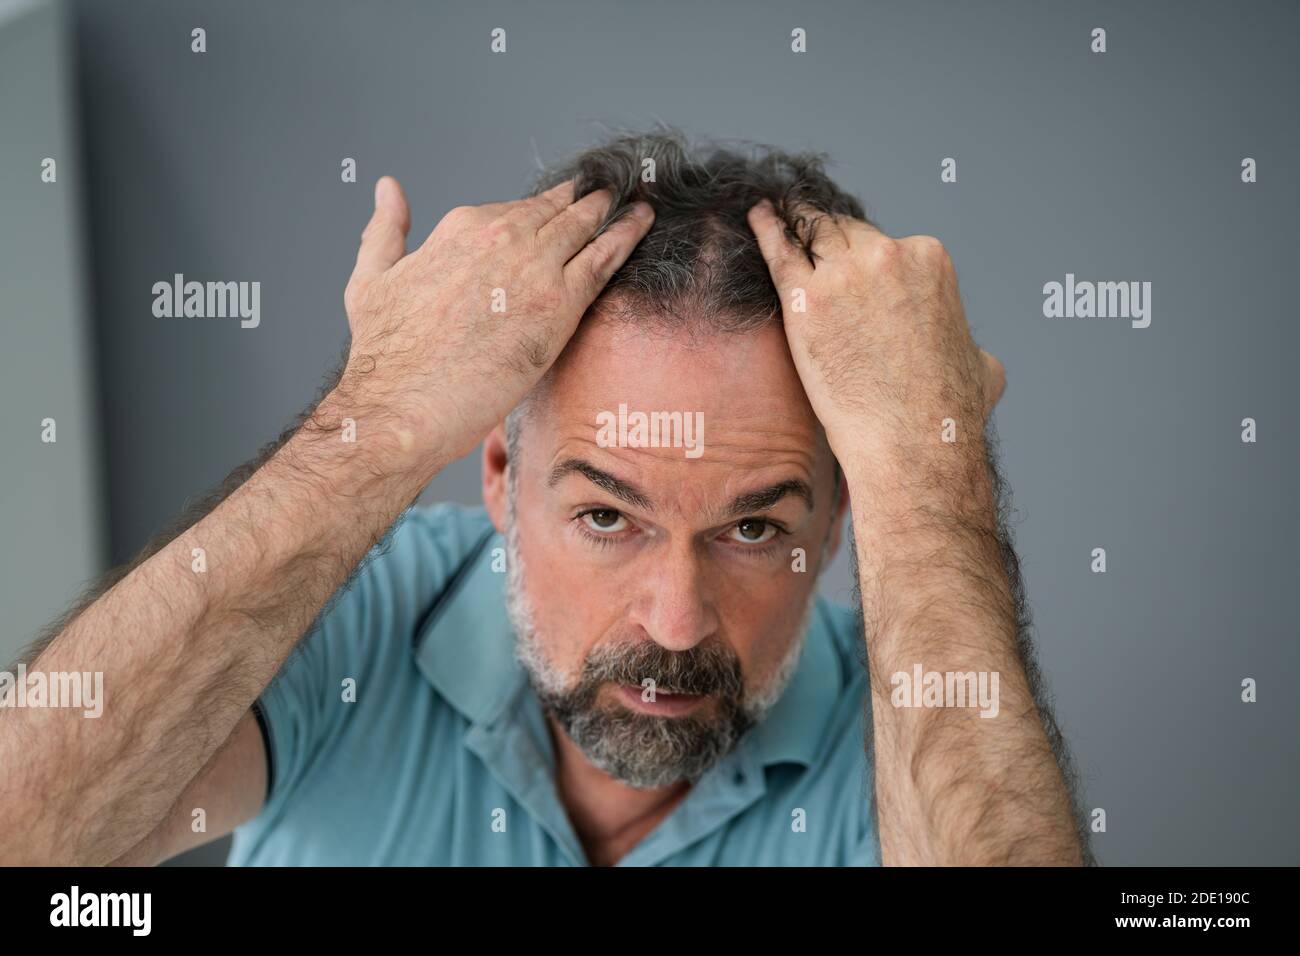 Man Checking His Hair Loss And Dandruff Stock Photo